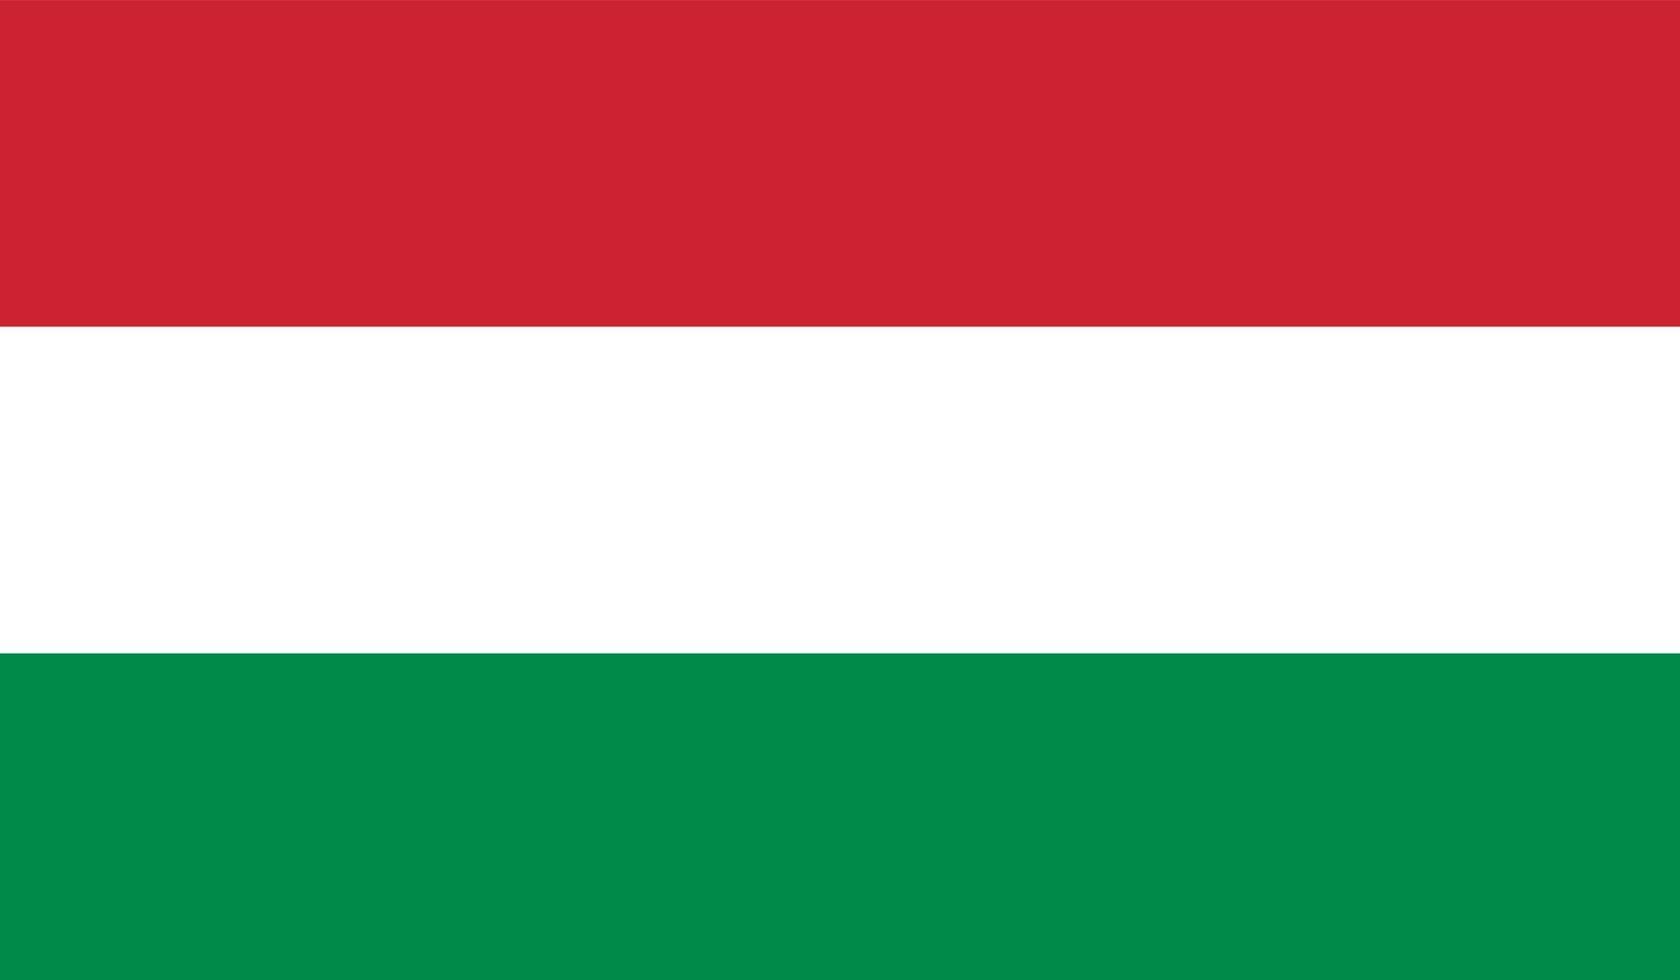 Hungary flag image vector